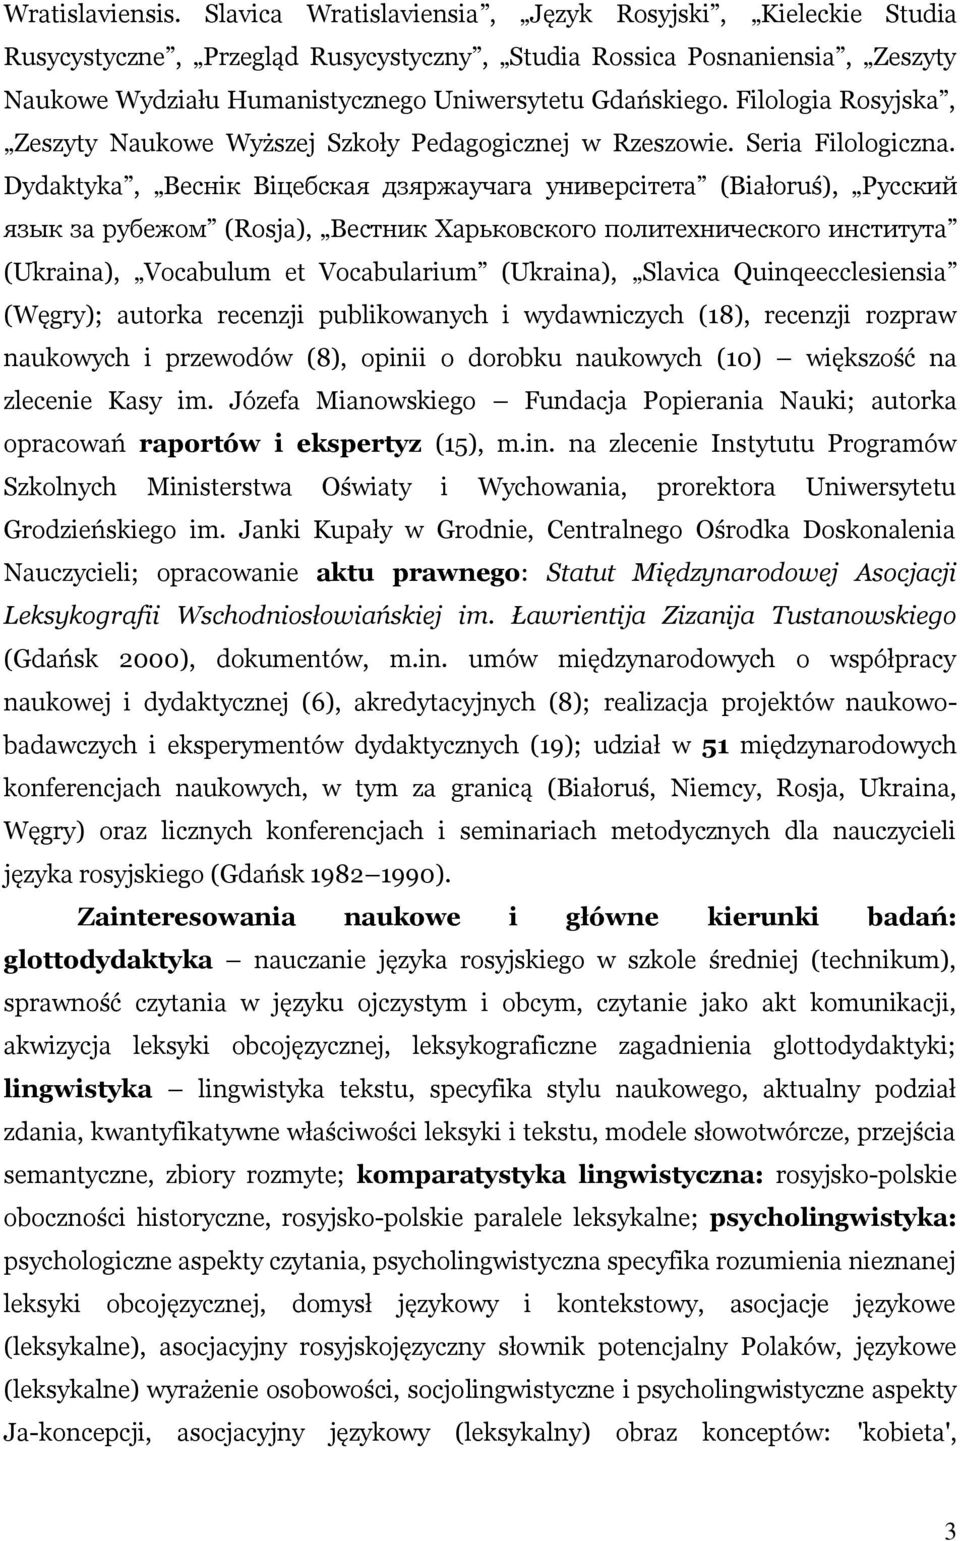 Filologia Rosyjska, Zeszyty Naukowe Wyższej Szkoły Pedagogicznej w Rzeszowie. Seria Filologiczna.